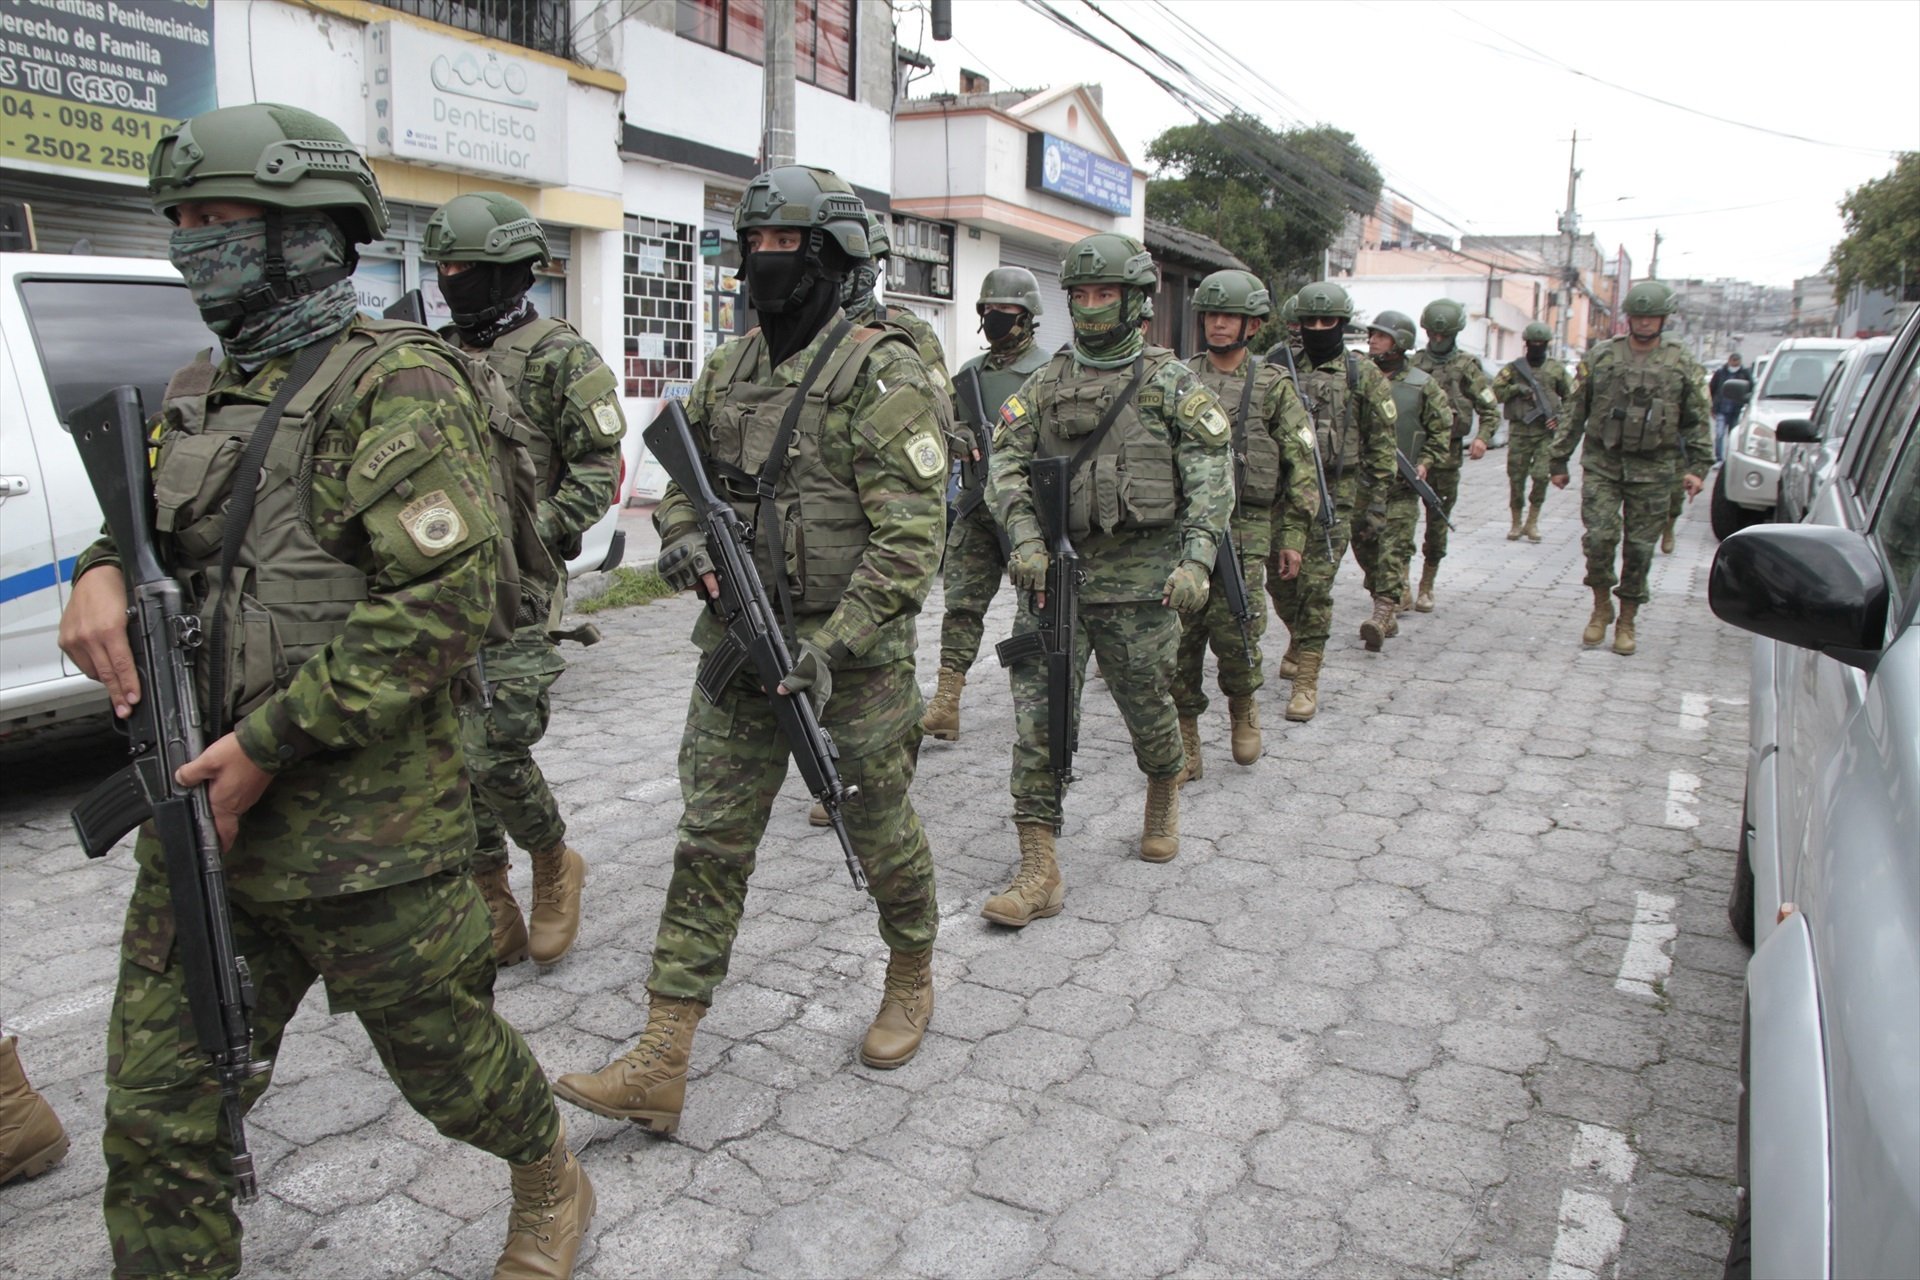 L'escalada de violència a l'Equador deixa més de 5.600 detinguts en 26 dies